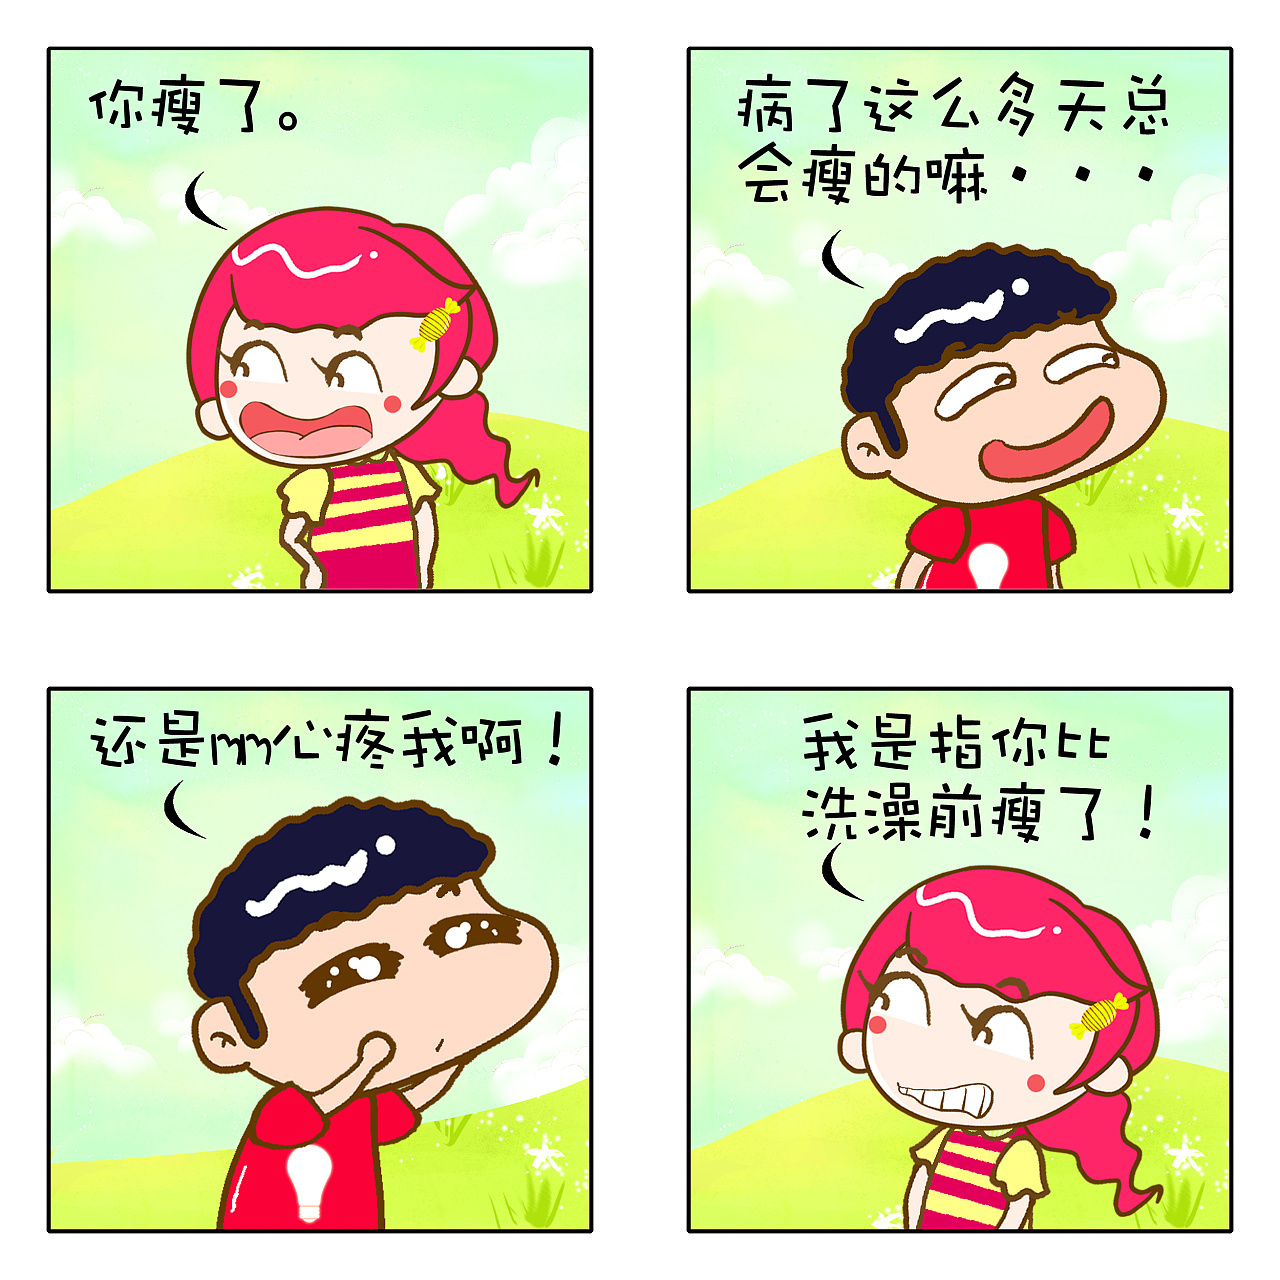 【校园】腐漫画《理想男友》 - 腐剧TV